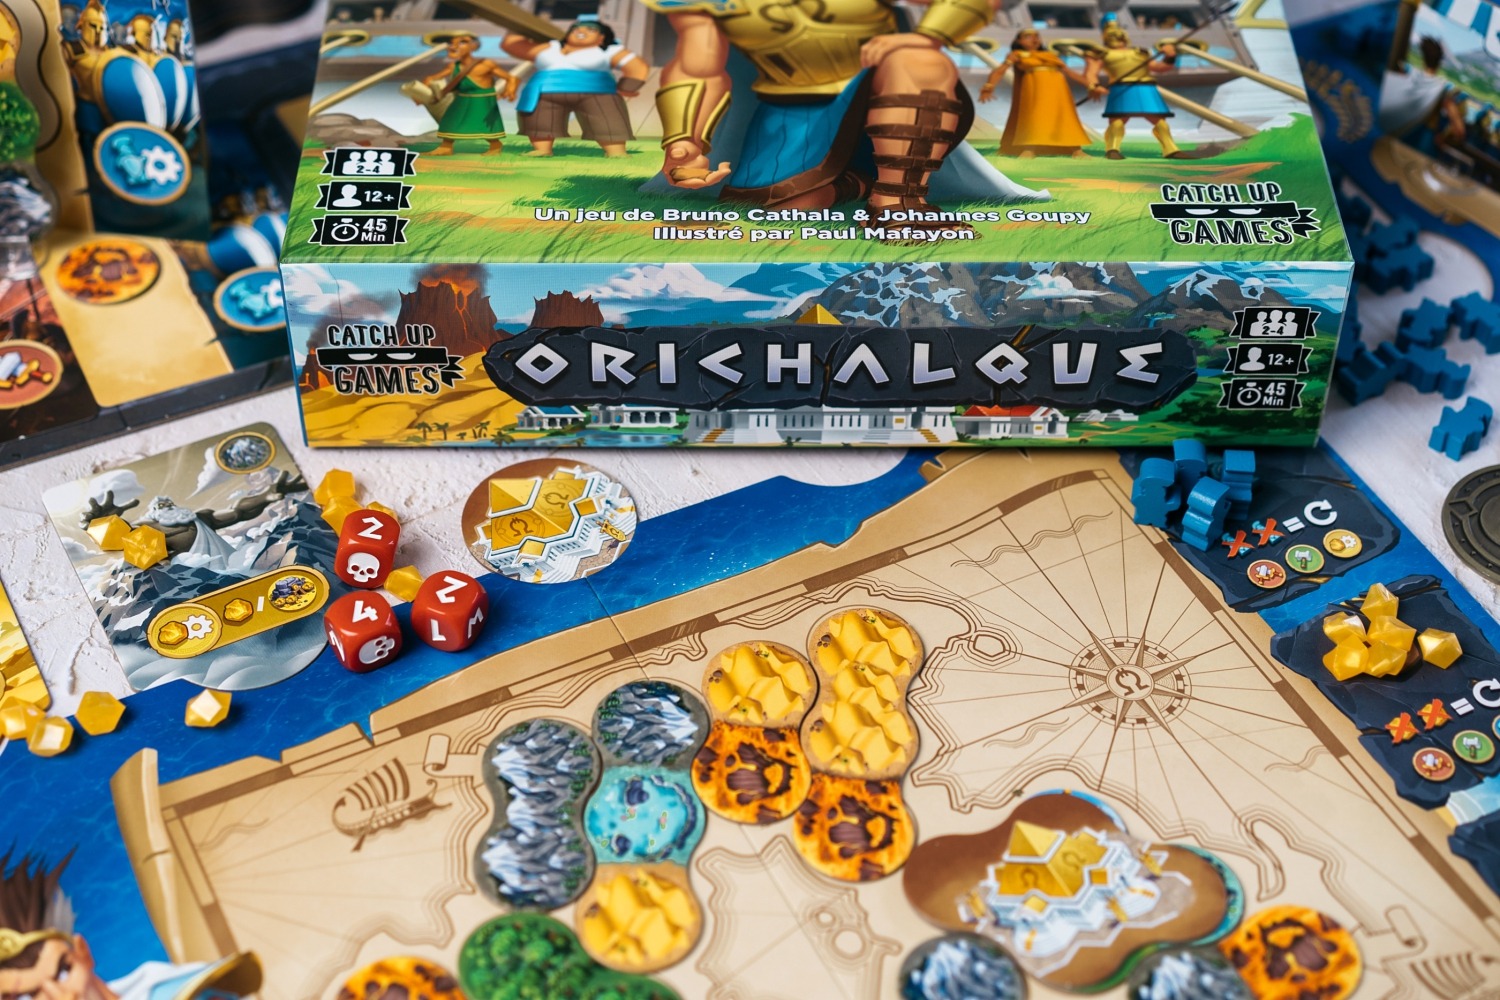 Orichalque catch up games jeu de société boardgame bgg